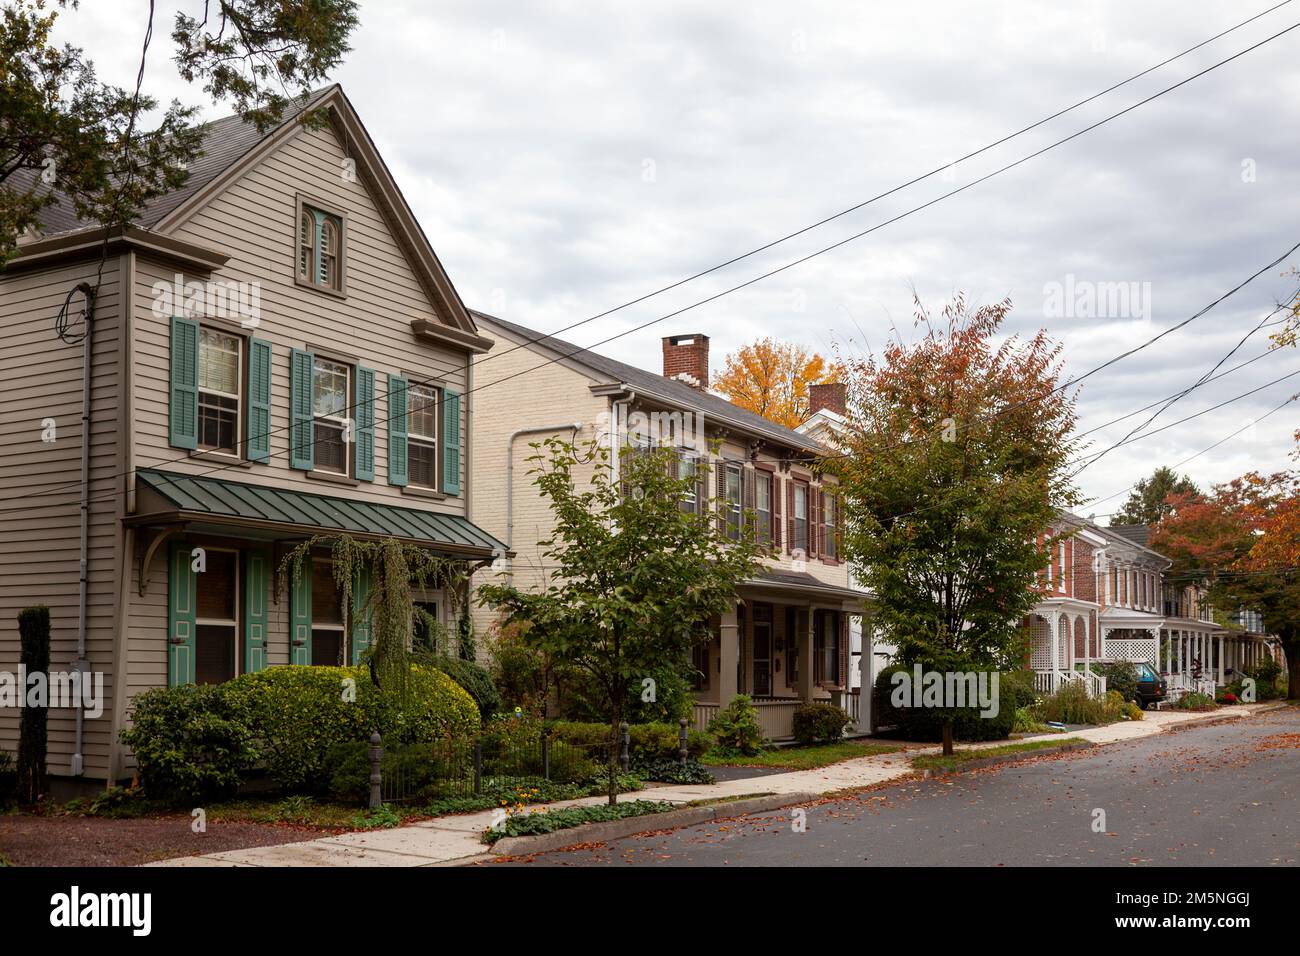 Rue résidentielle avec maisons à Lambertville, New Jersey - Etats-Unis Banque D'Images